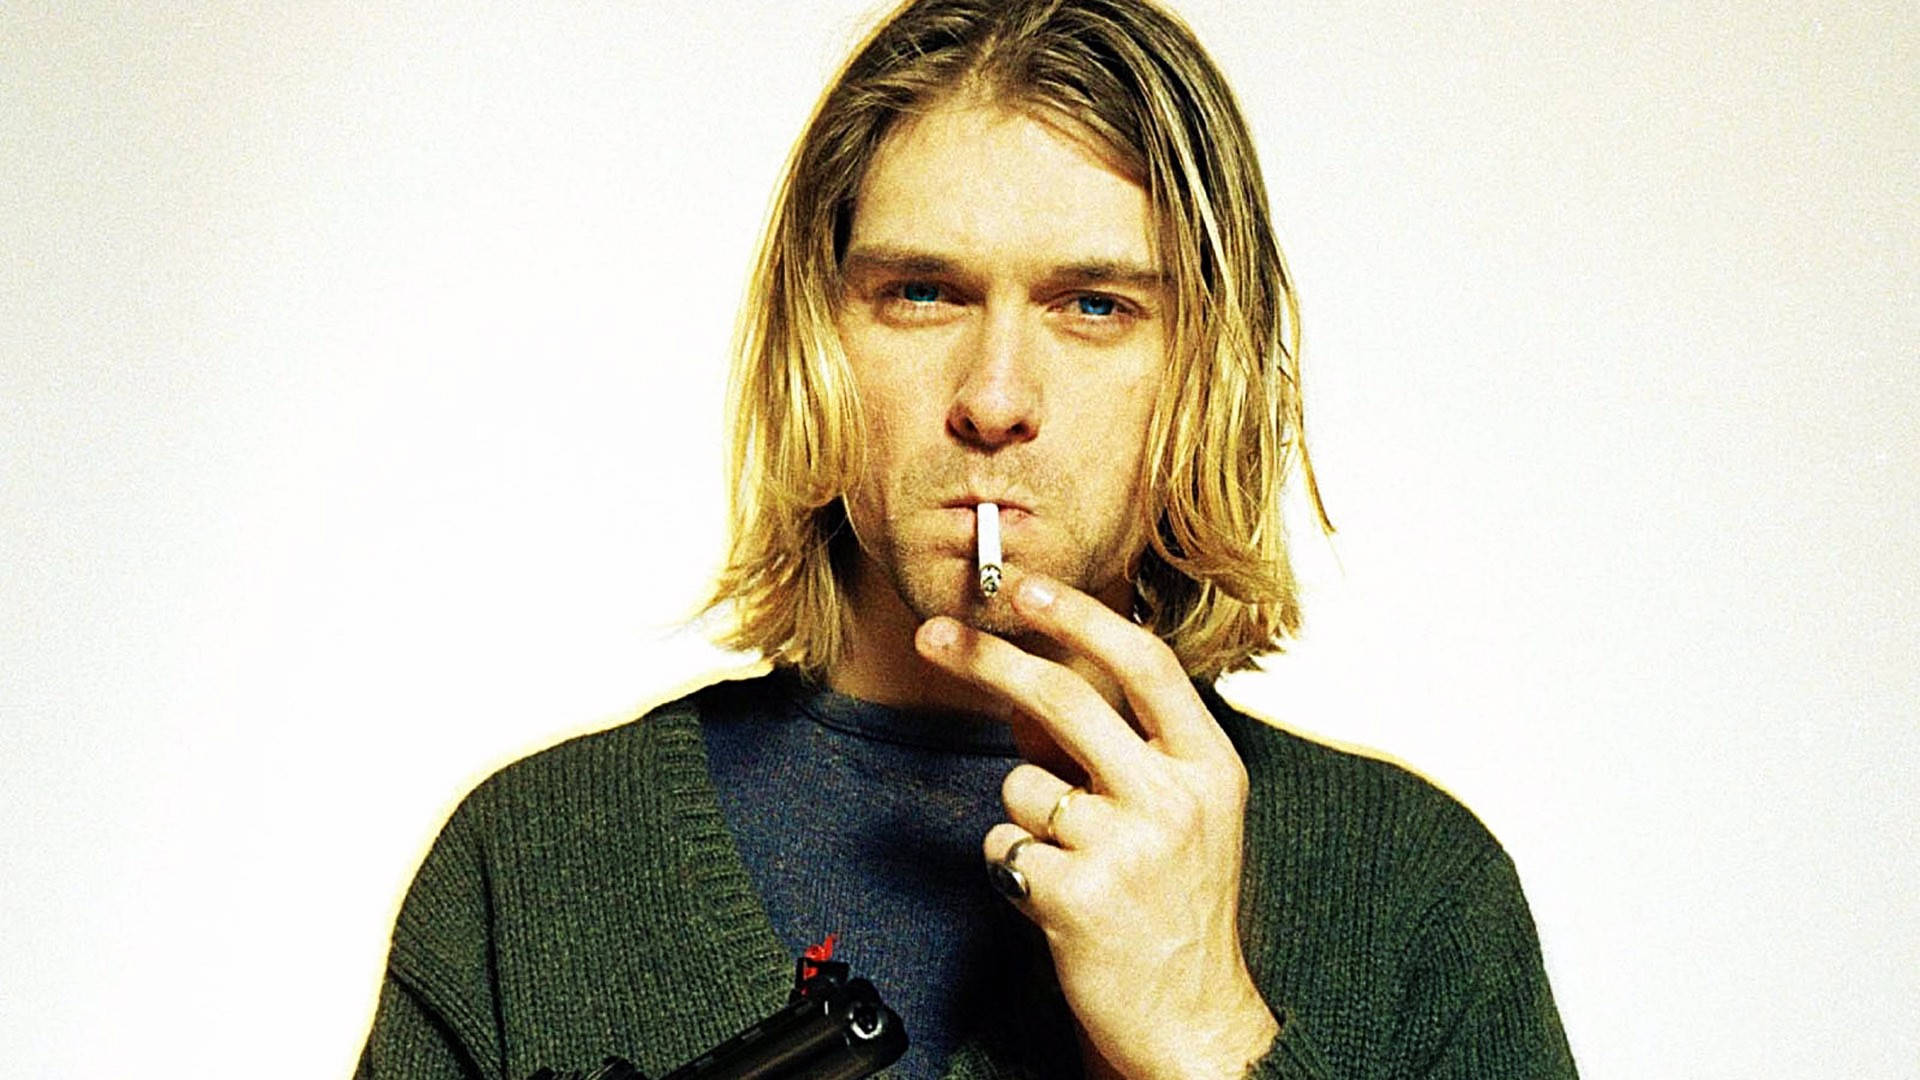 Tapet - Kurt Cobain, der ryger med en pistol tapet. Wallpaper